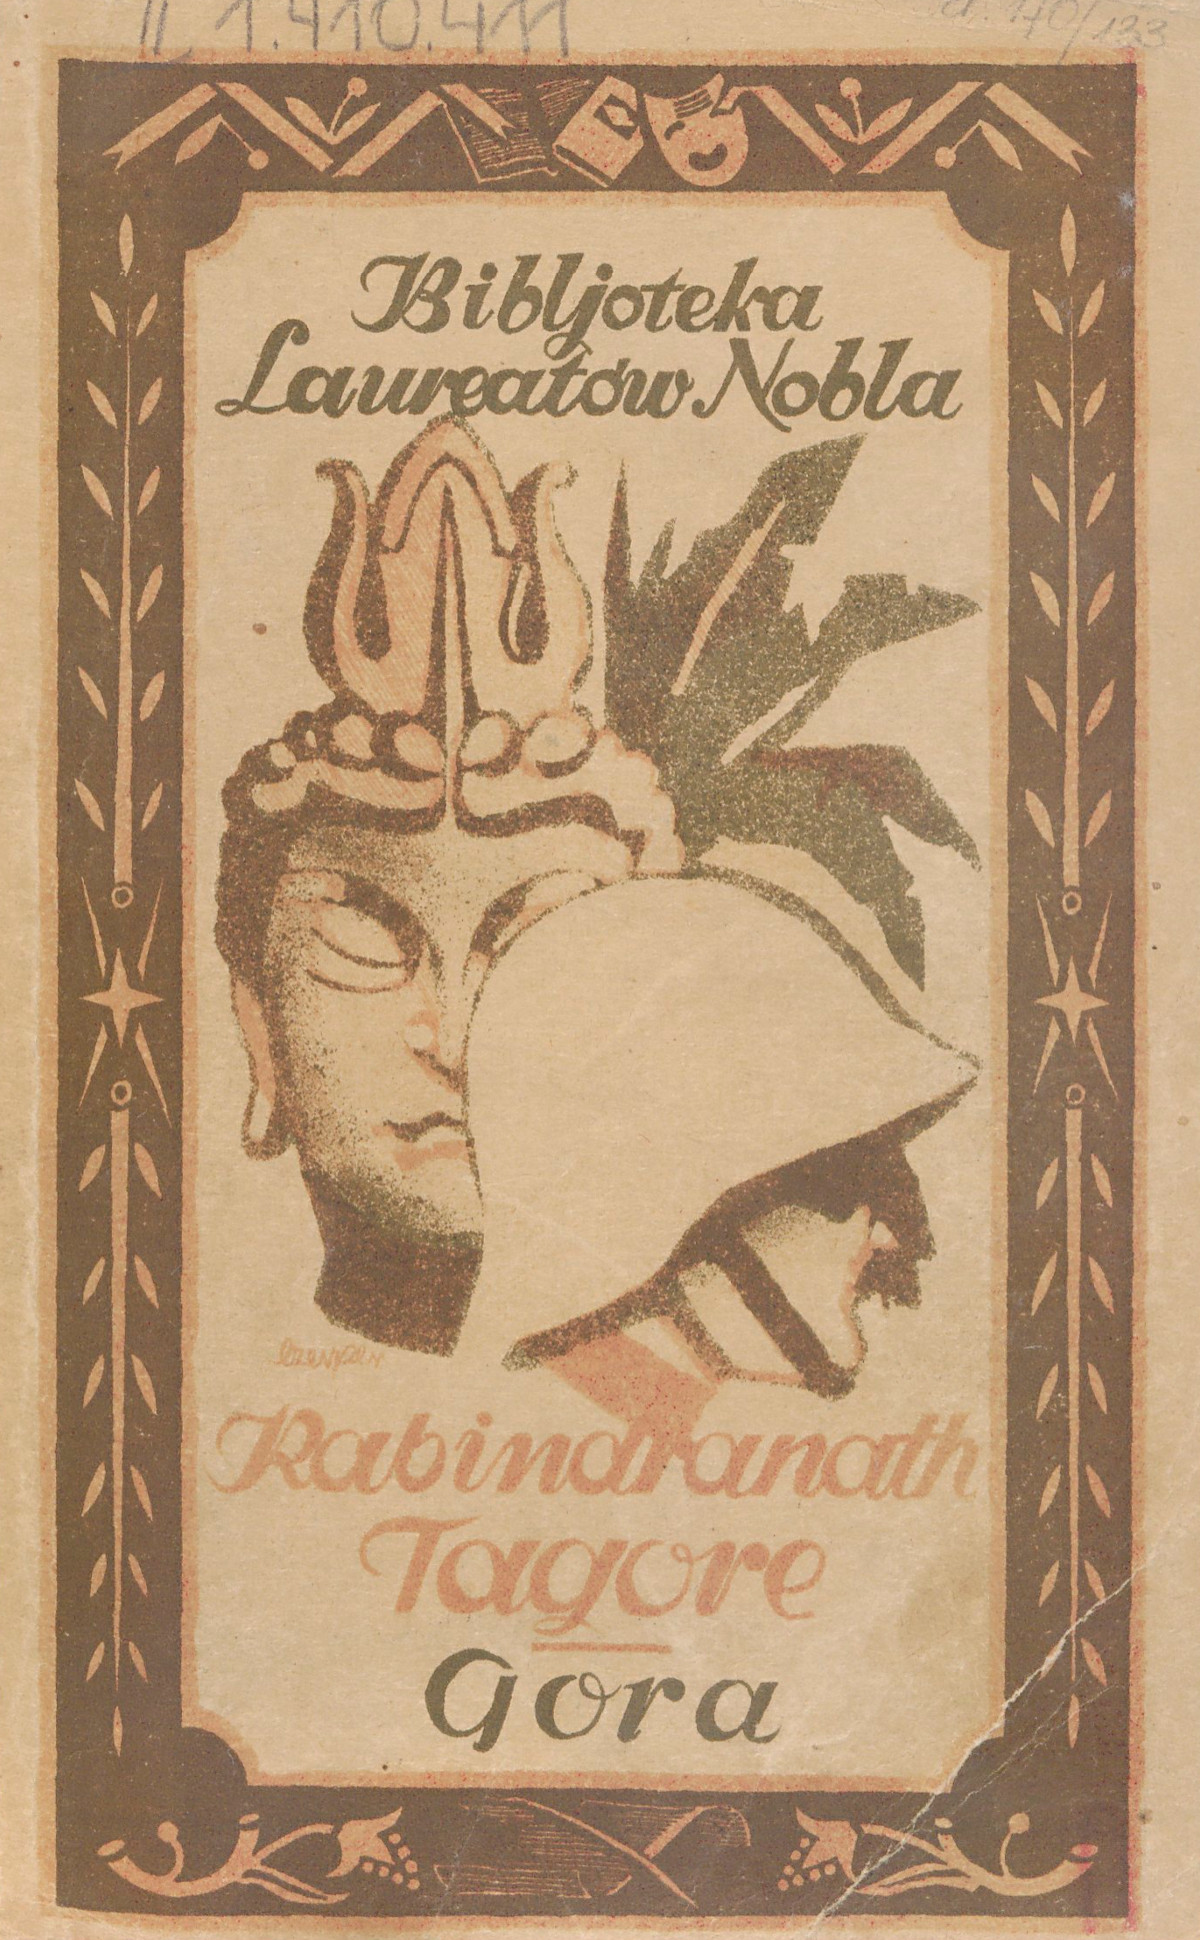 Okładka książki Rabindranatha Tagore’a, "Gora", Lwów - Poznań 1926. Fot. Polona 